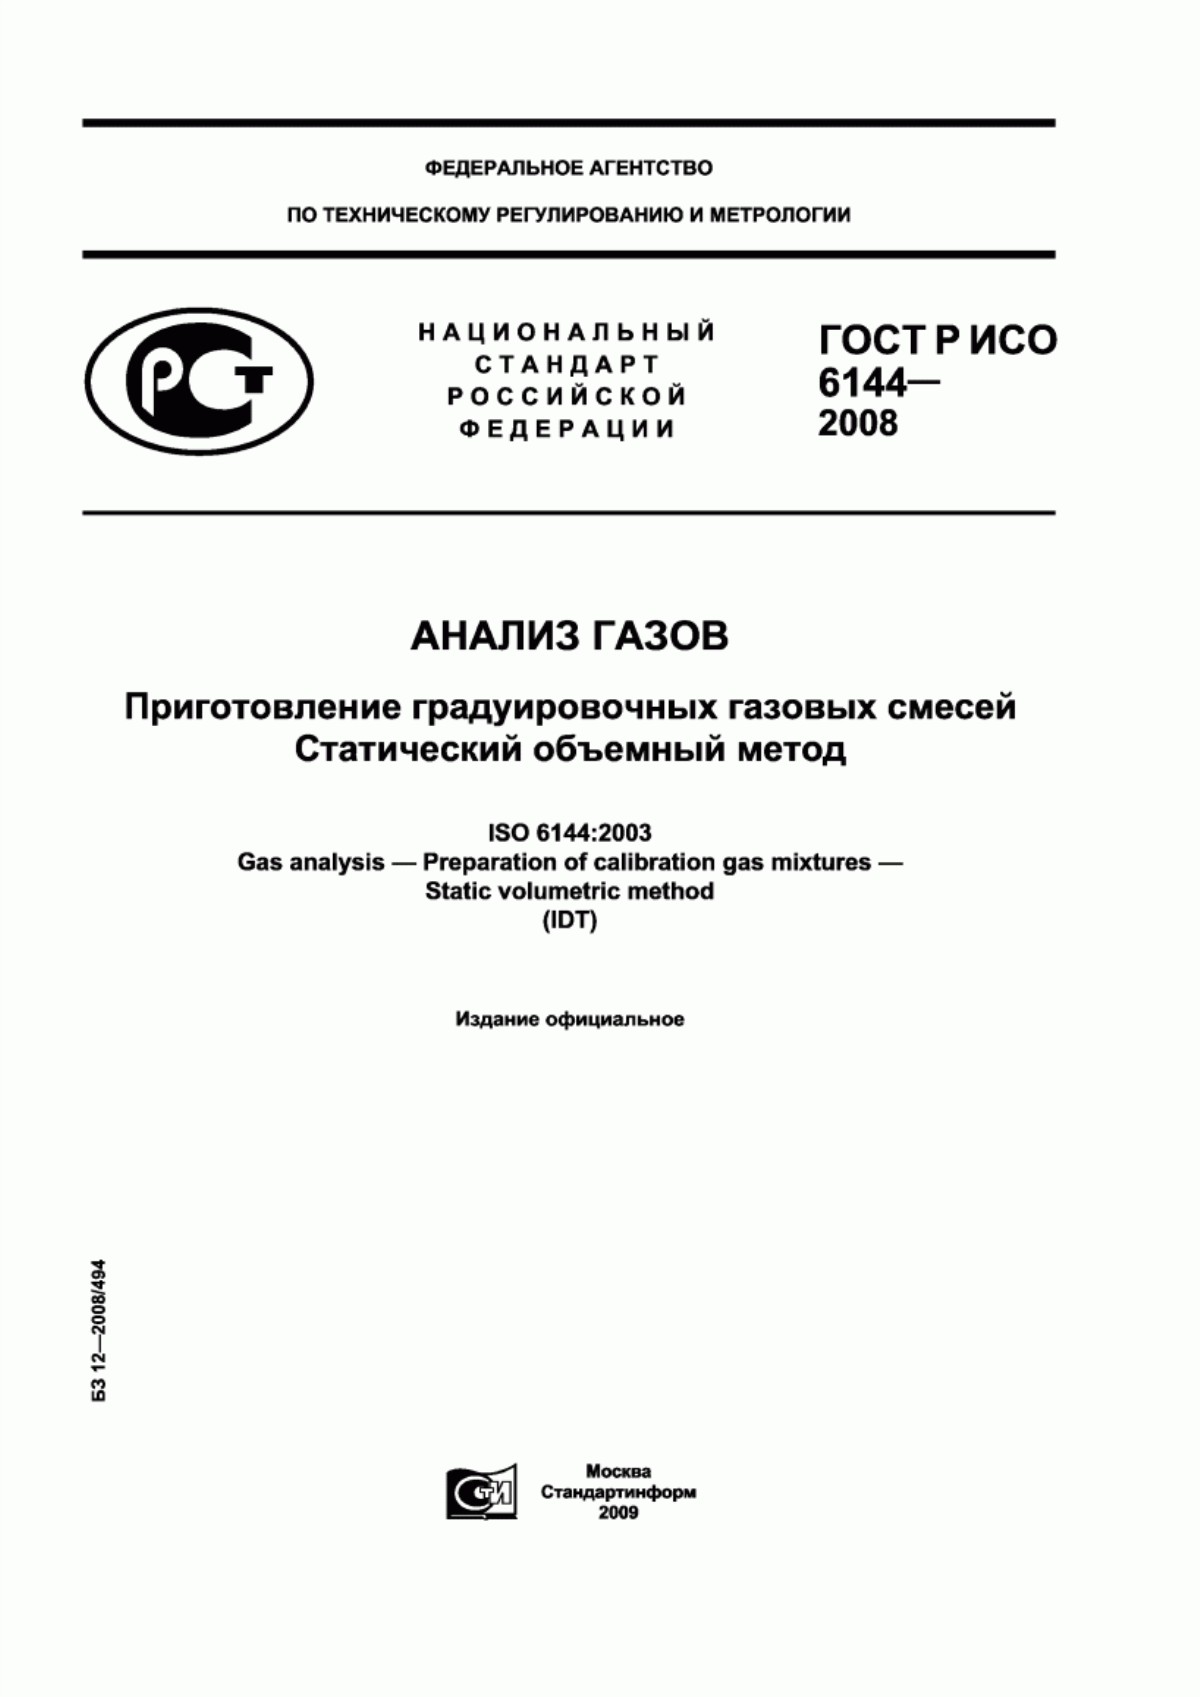 ГОСТ Р ИСО 6144-2008 Анализ газов. Приготовление градуировочных газовых смесей. Статический объемный метод